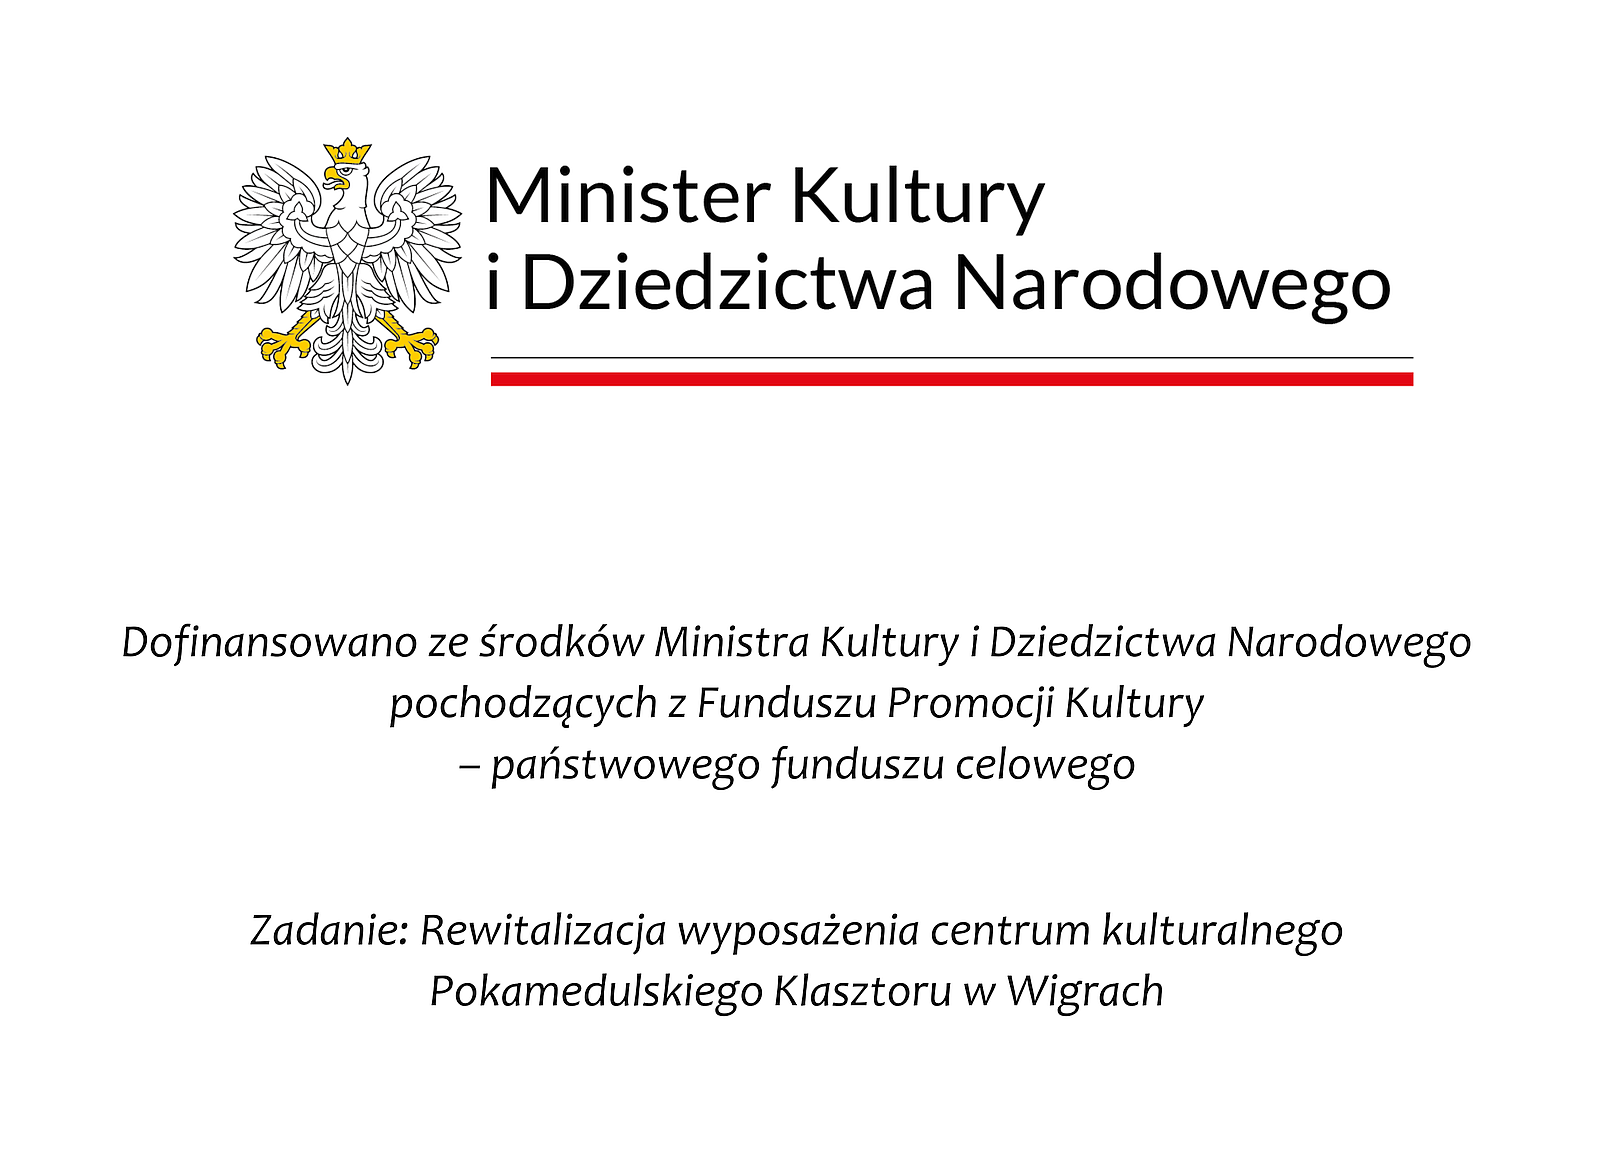 Rewitalizacja wyposażenia centrum kulturalnego Pokamedulskiego Klasztoru w Wigrach - MKDiN 2022